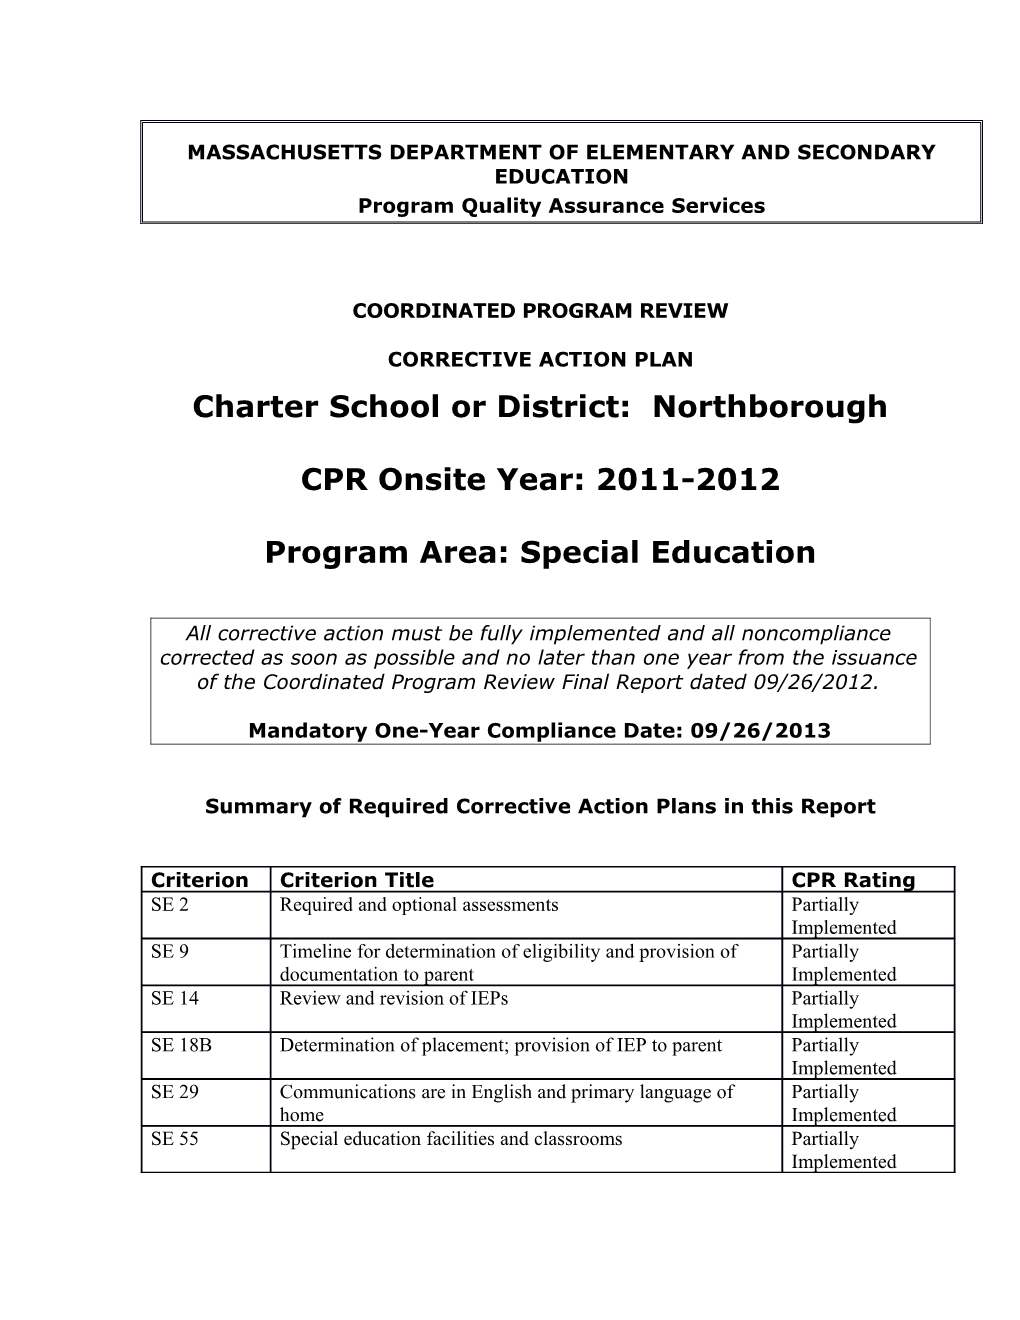 Northborough Public Schools CAP 2012